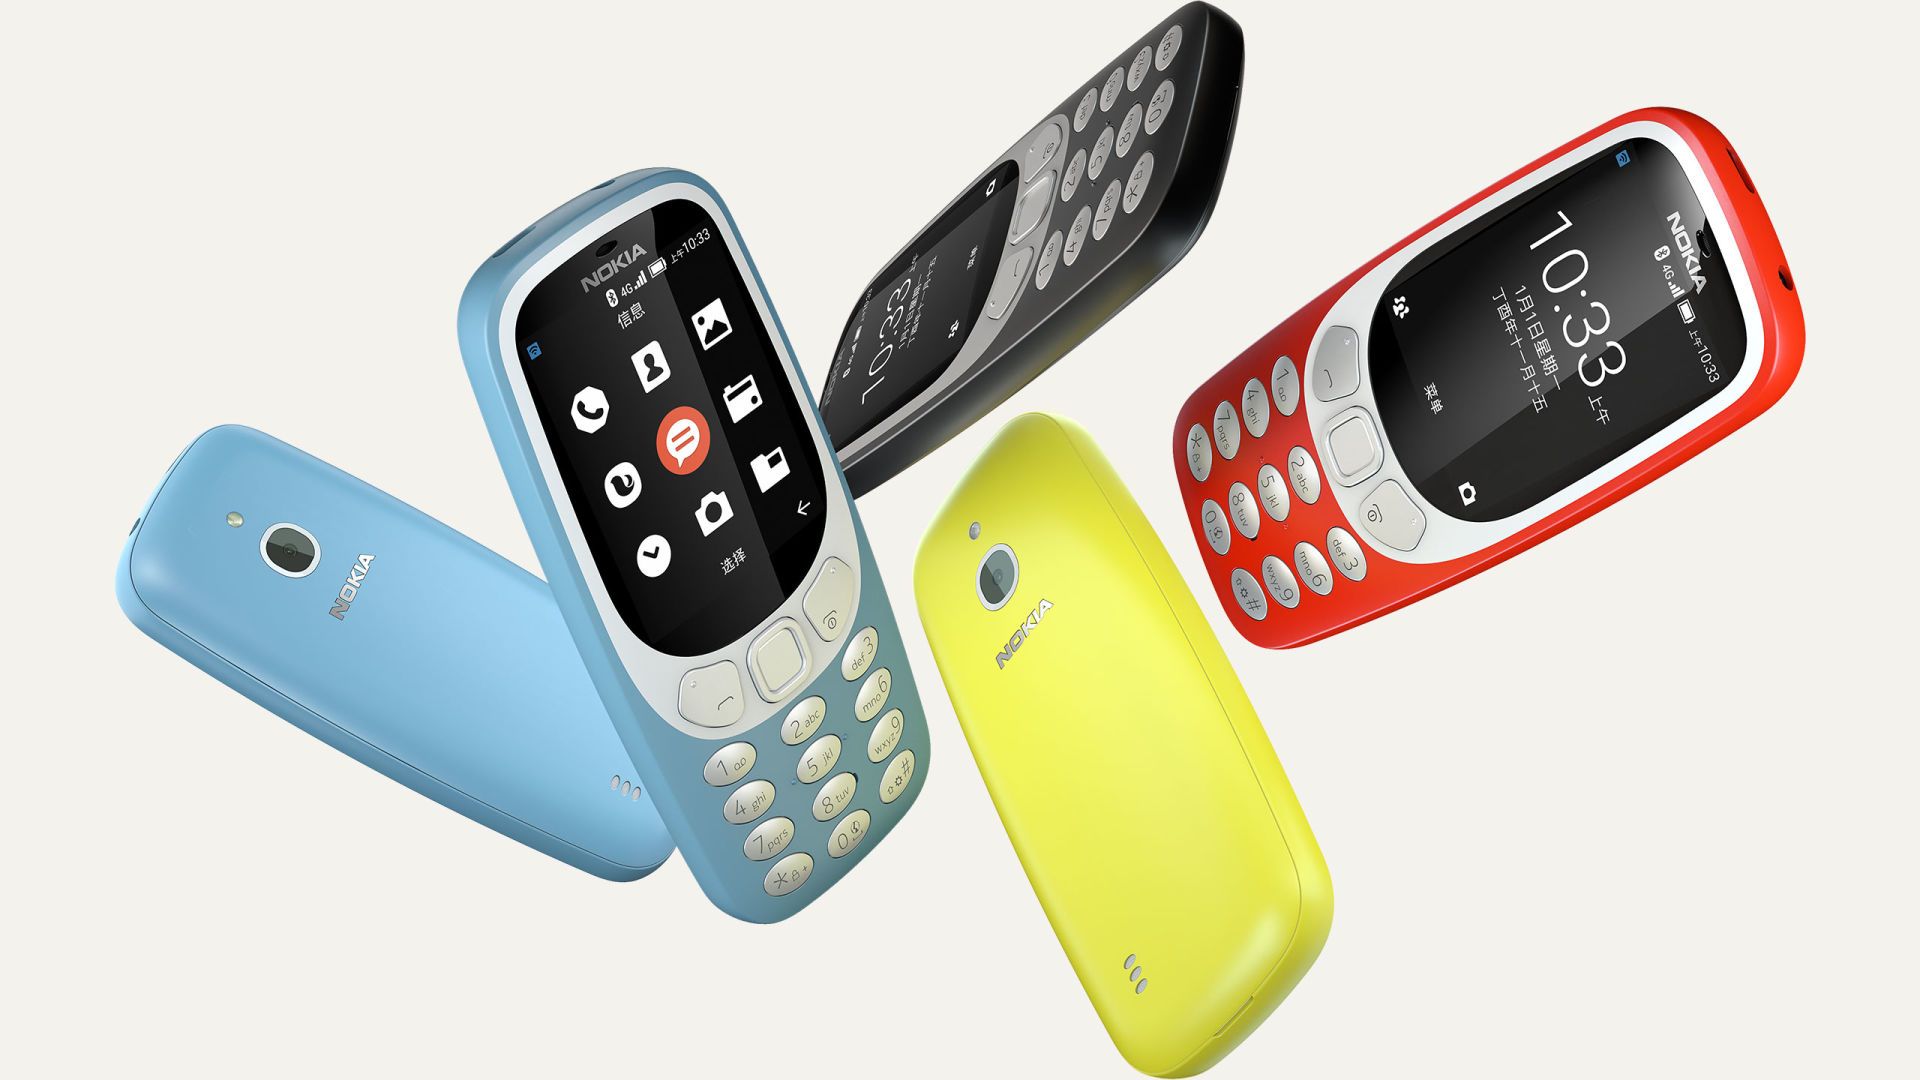 4G verzia mobilu Nokia 3310 je realitou